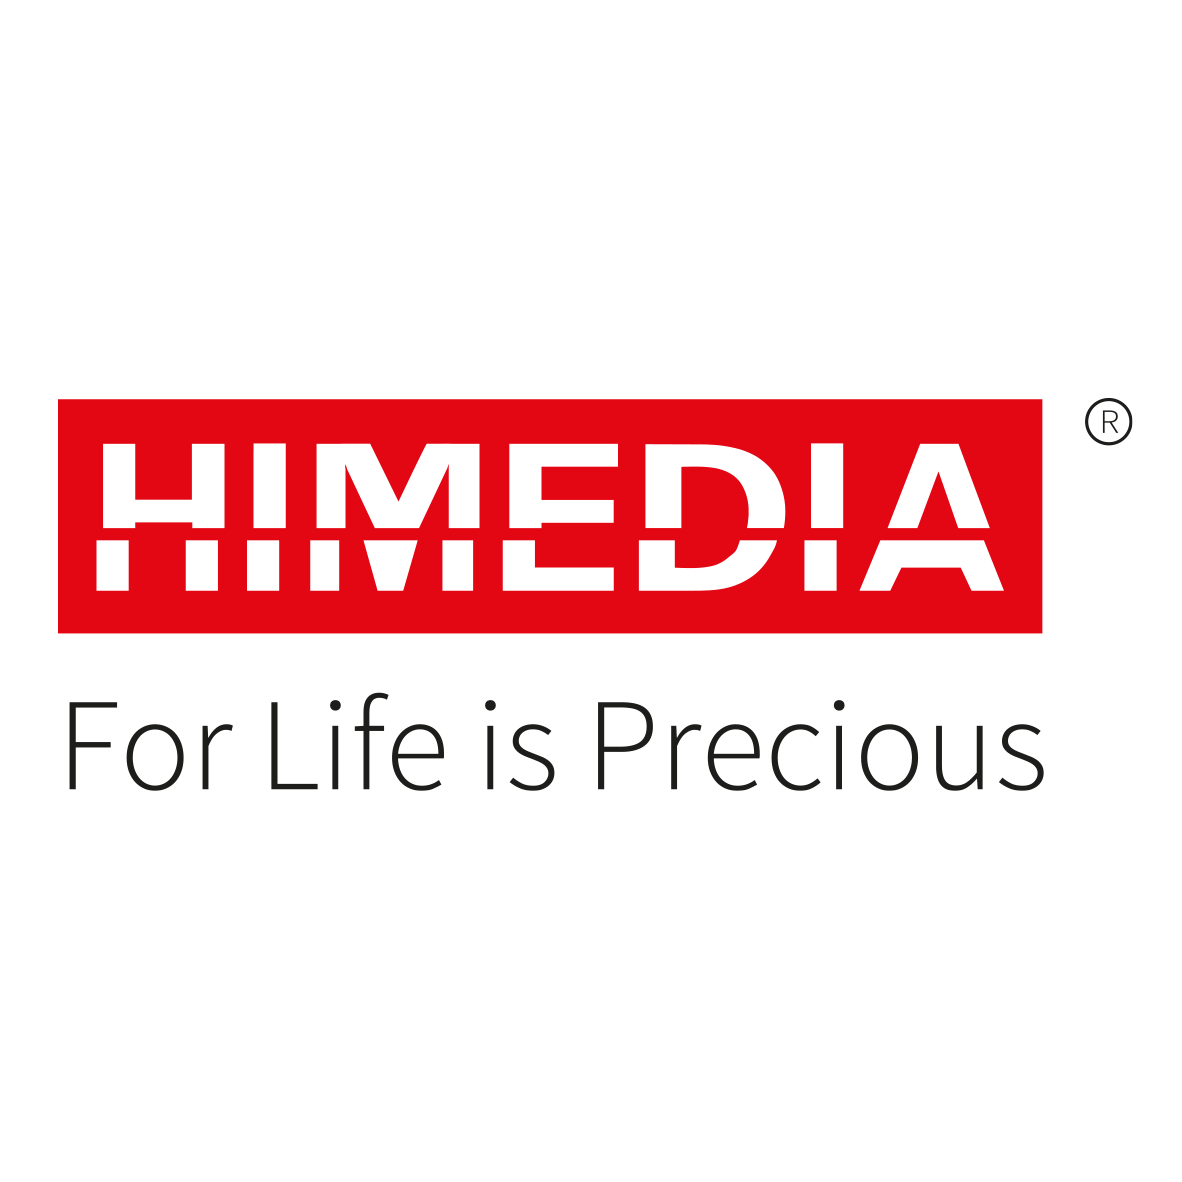 Logo des neoFroxx Partners HiMedia